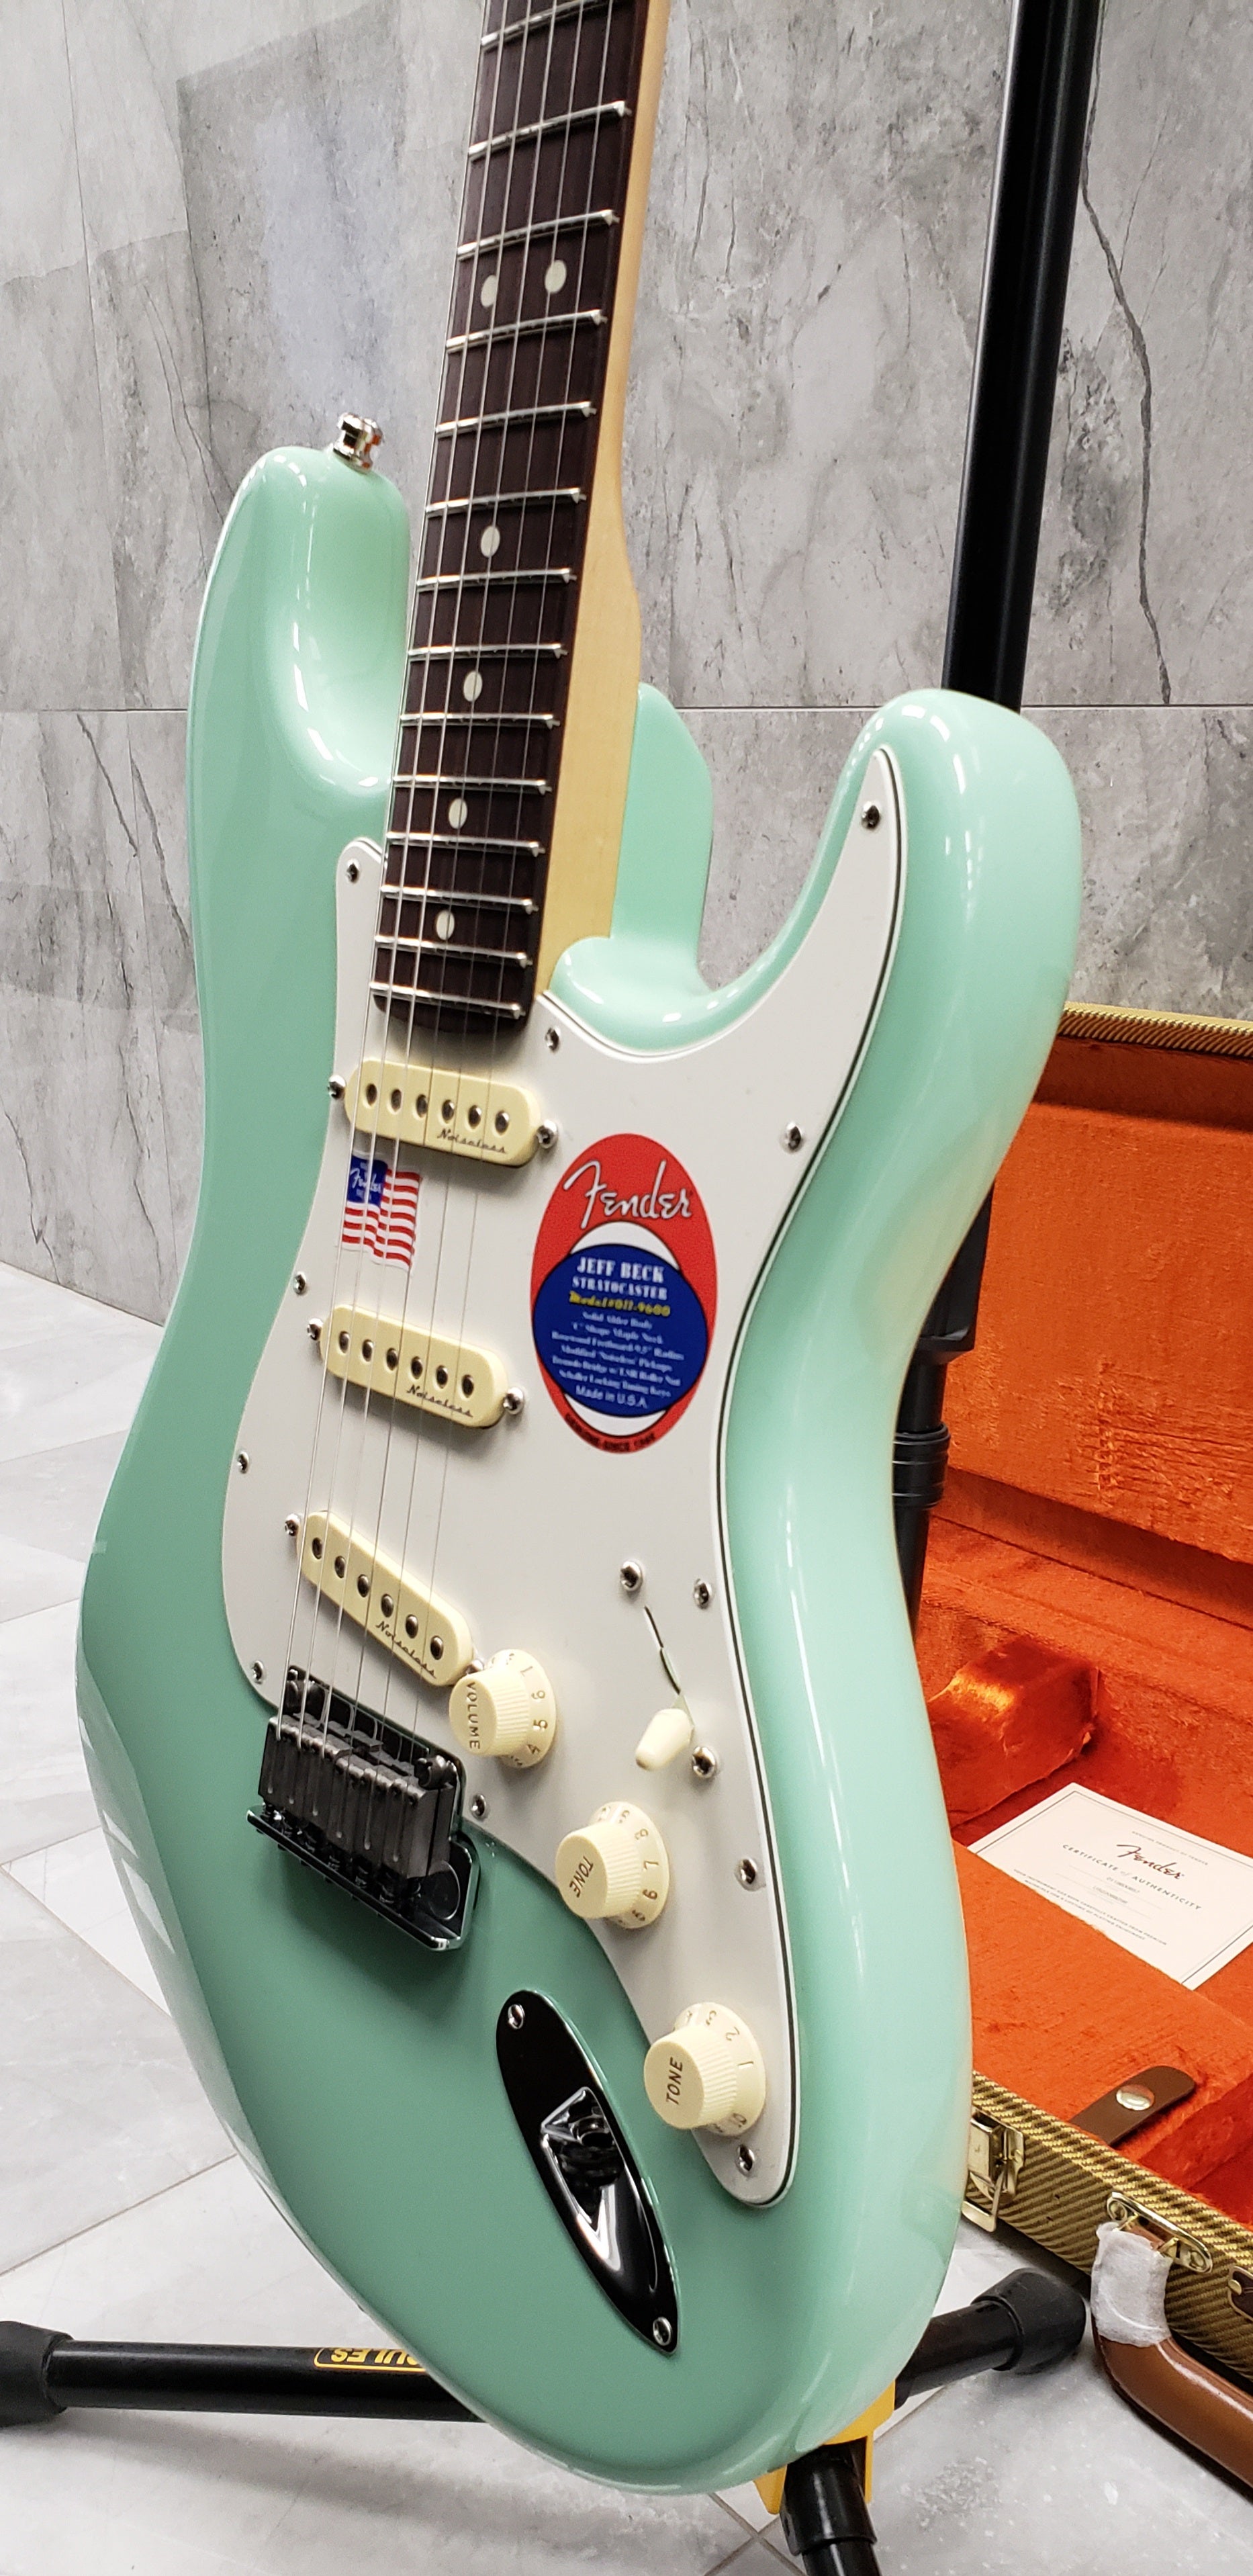 Fender Jeff Beck Stratocaster Rosewood Fingerboard Surf Green 0119600857